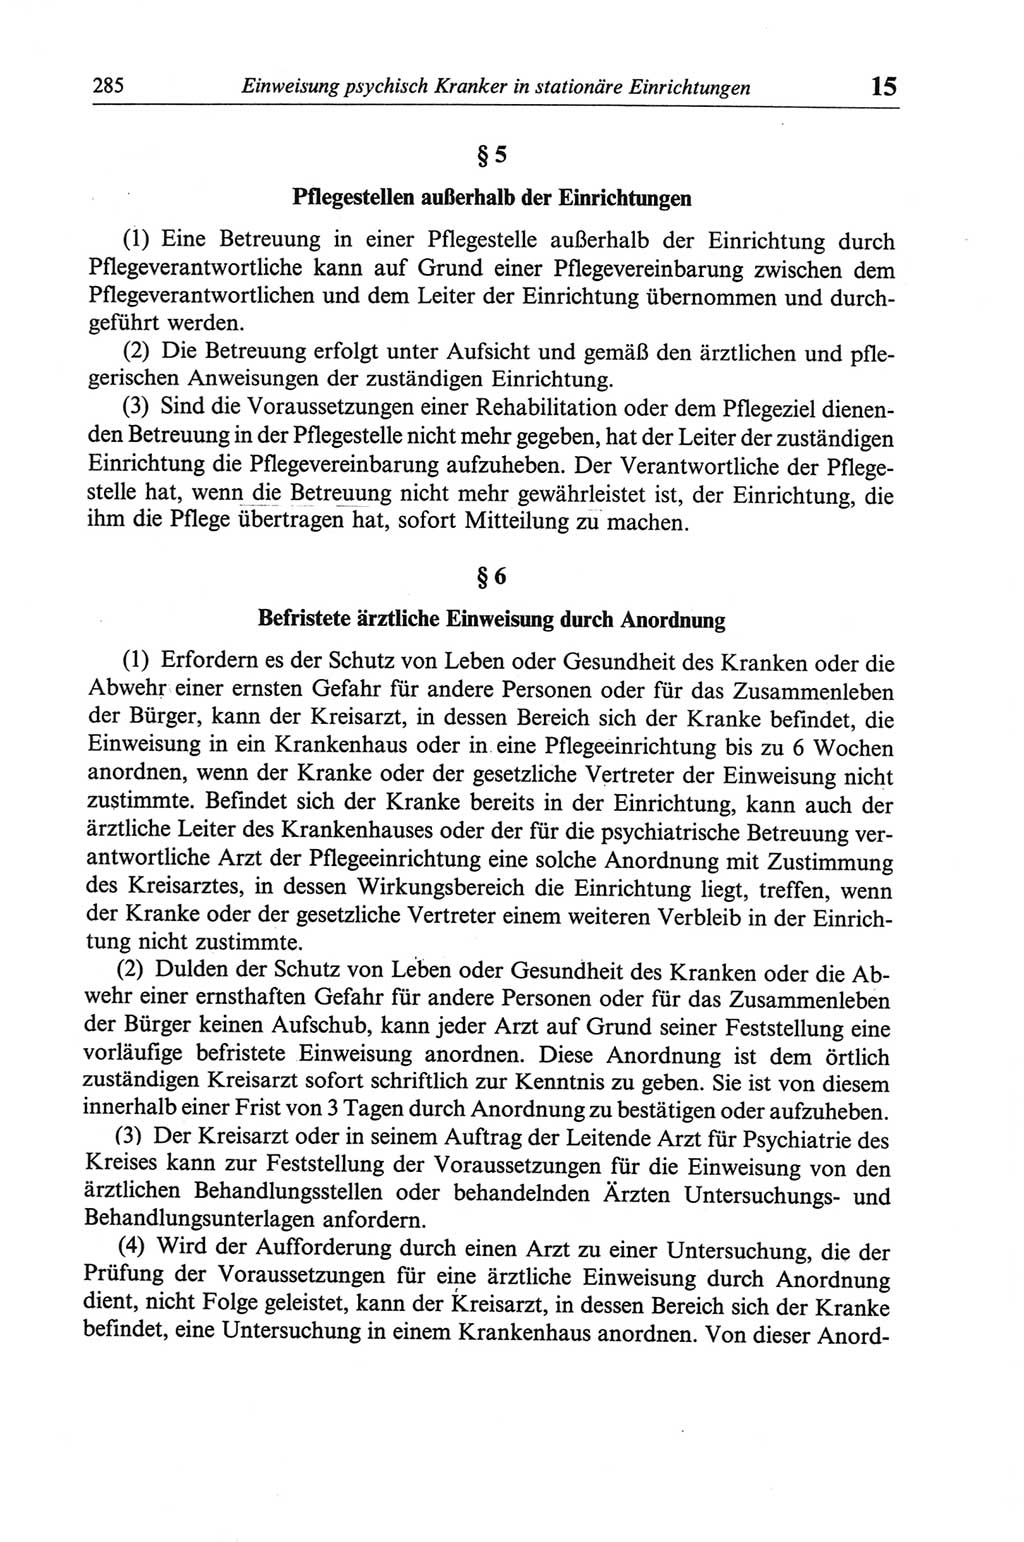 Strafgesetzbuch (StGB) der Deutschen Demokratischen Republik (DDR) und angrenzende Gesetze und Bestimmungen 1968, Seite 285 (StGB Ges. Best. DDR 1968, S. 285)